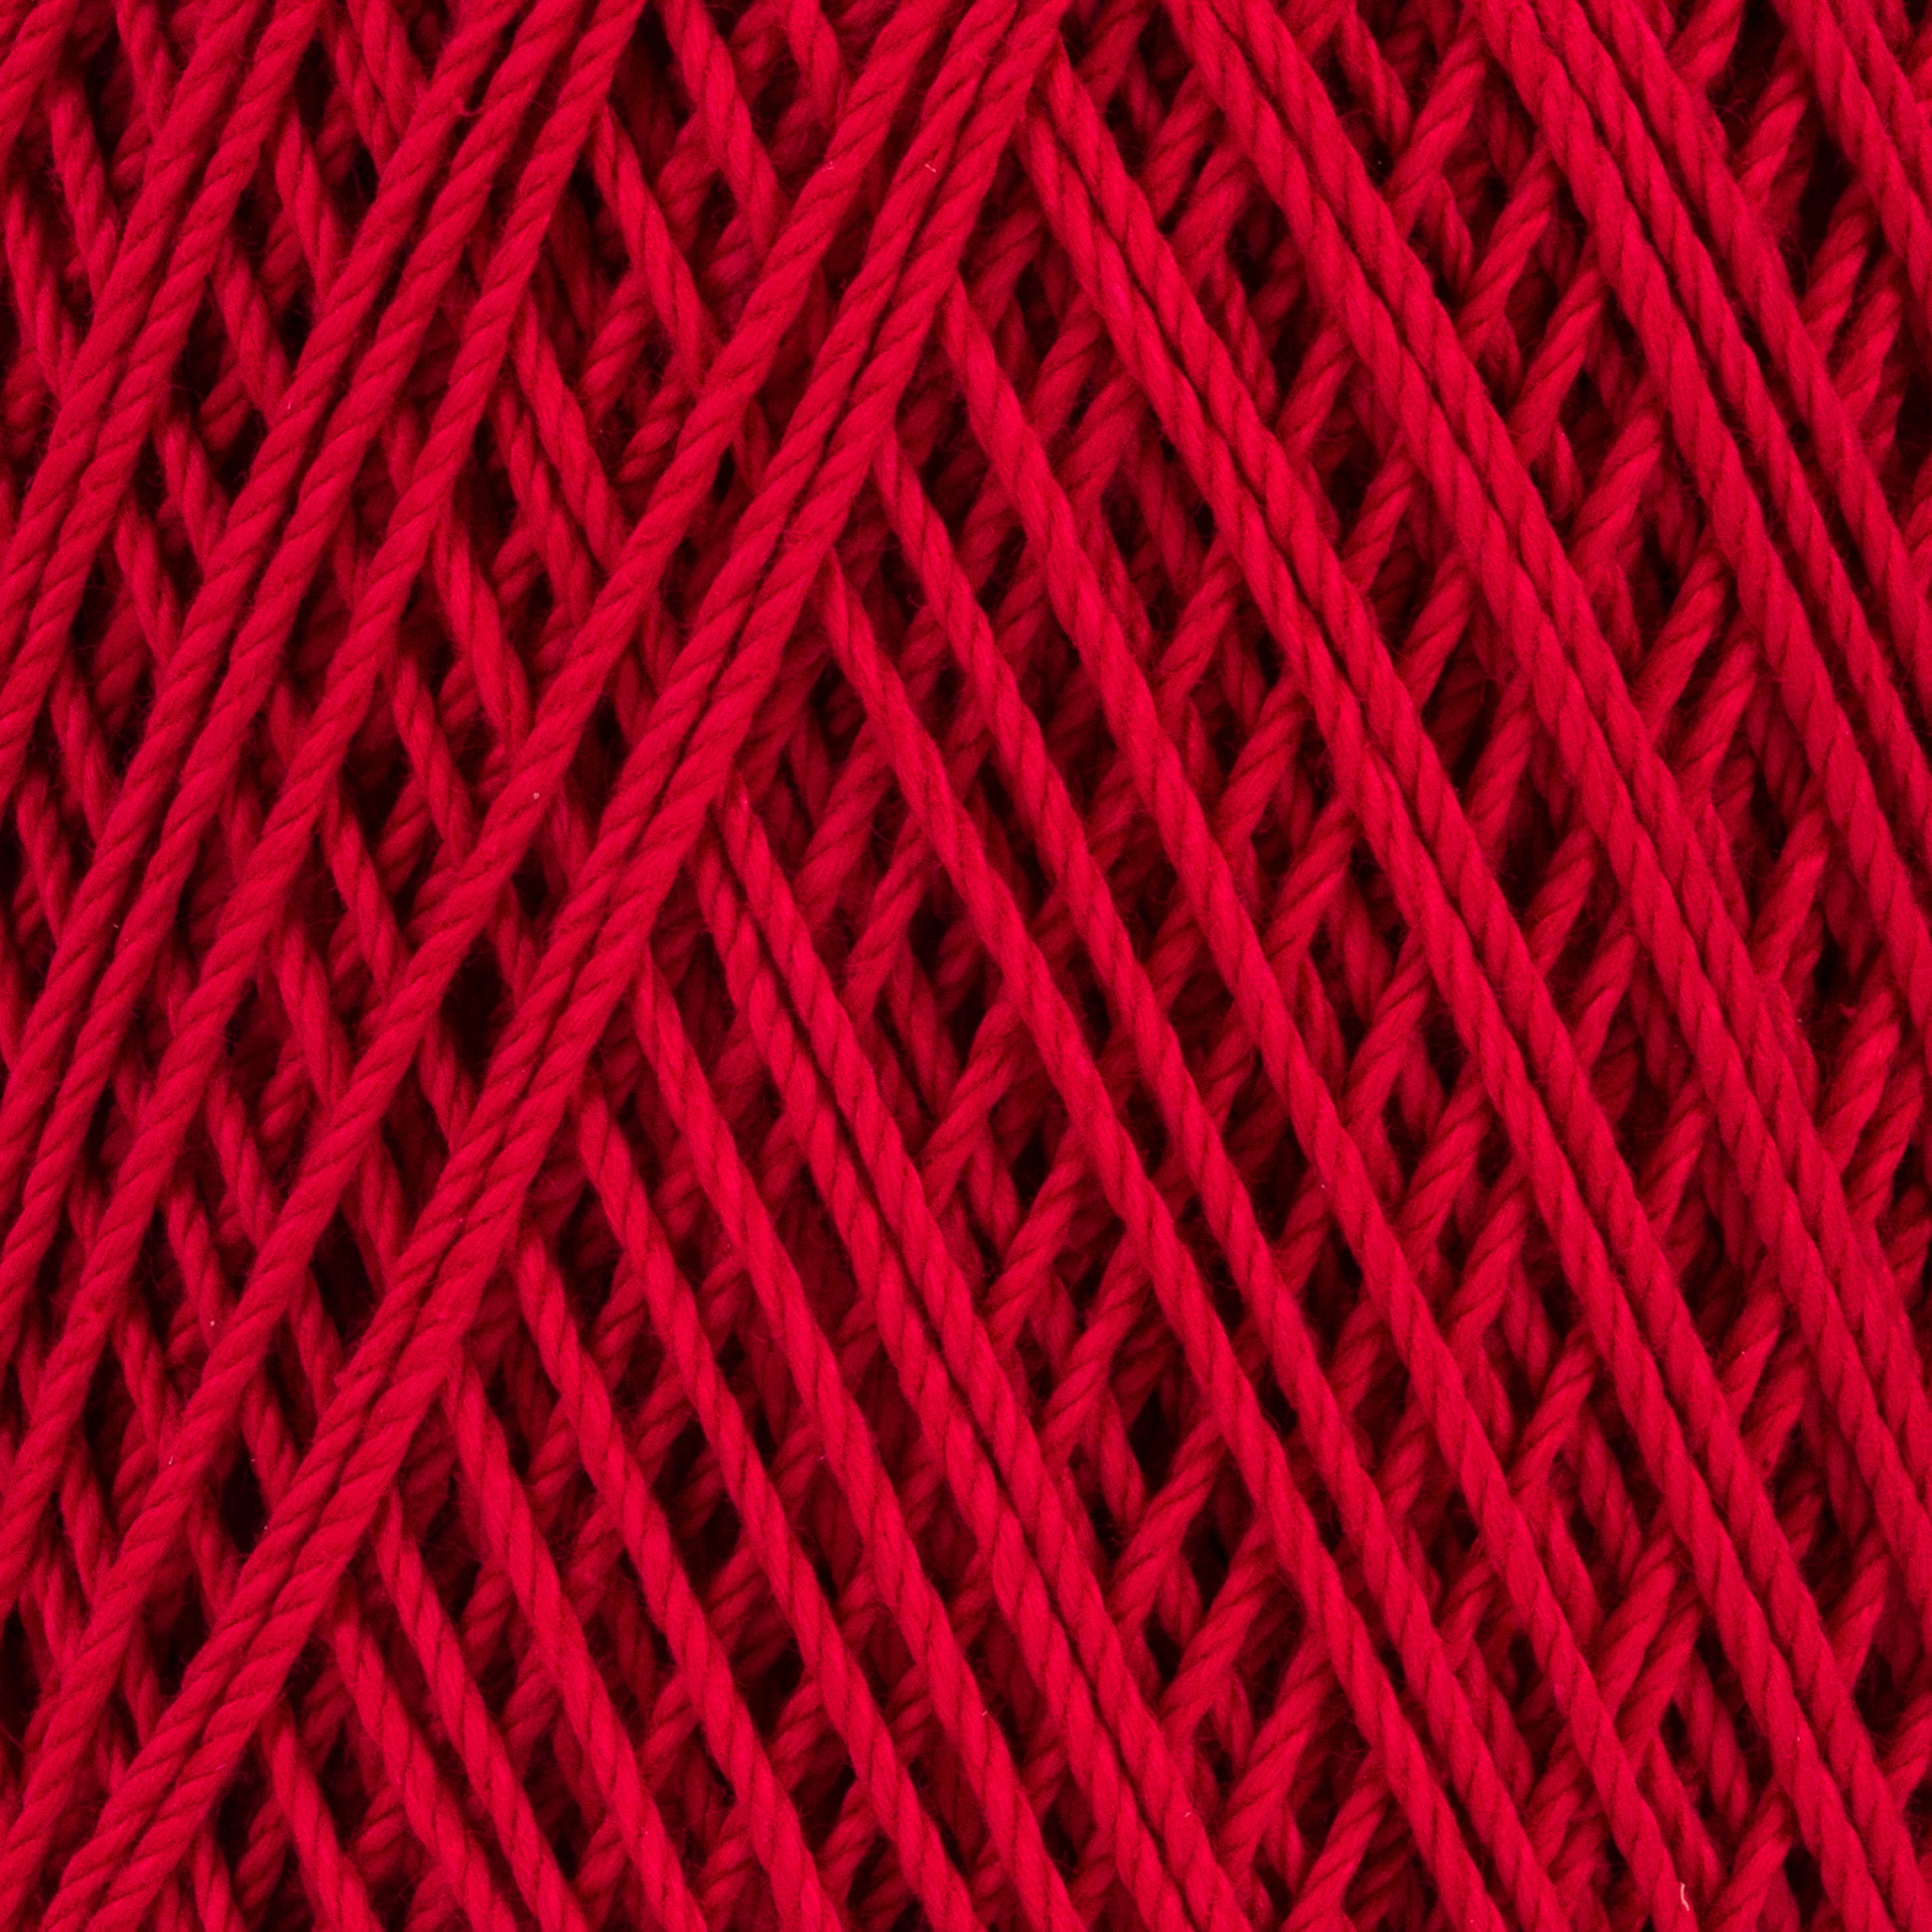 4 spools 150 yards each Aunt Lydia's Crochet Thread Fashion 3 Warm Blue 0175